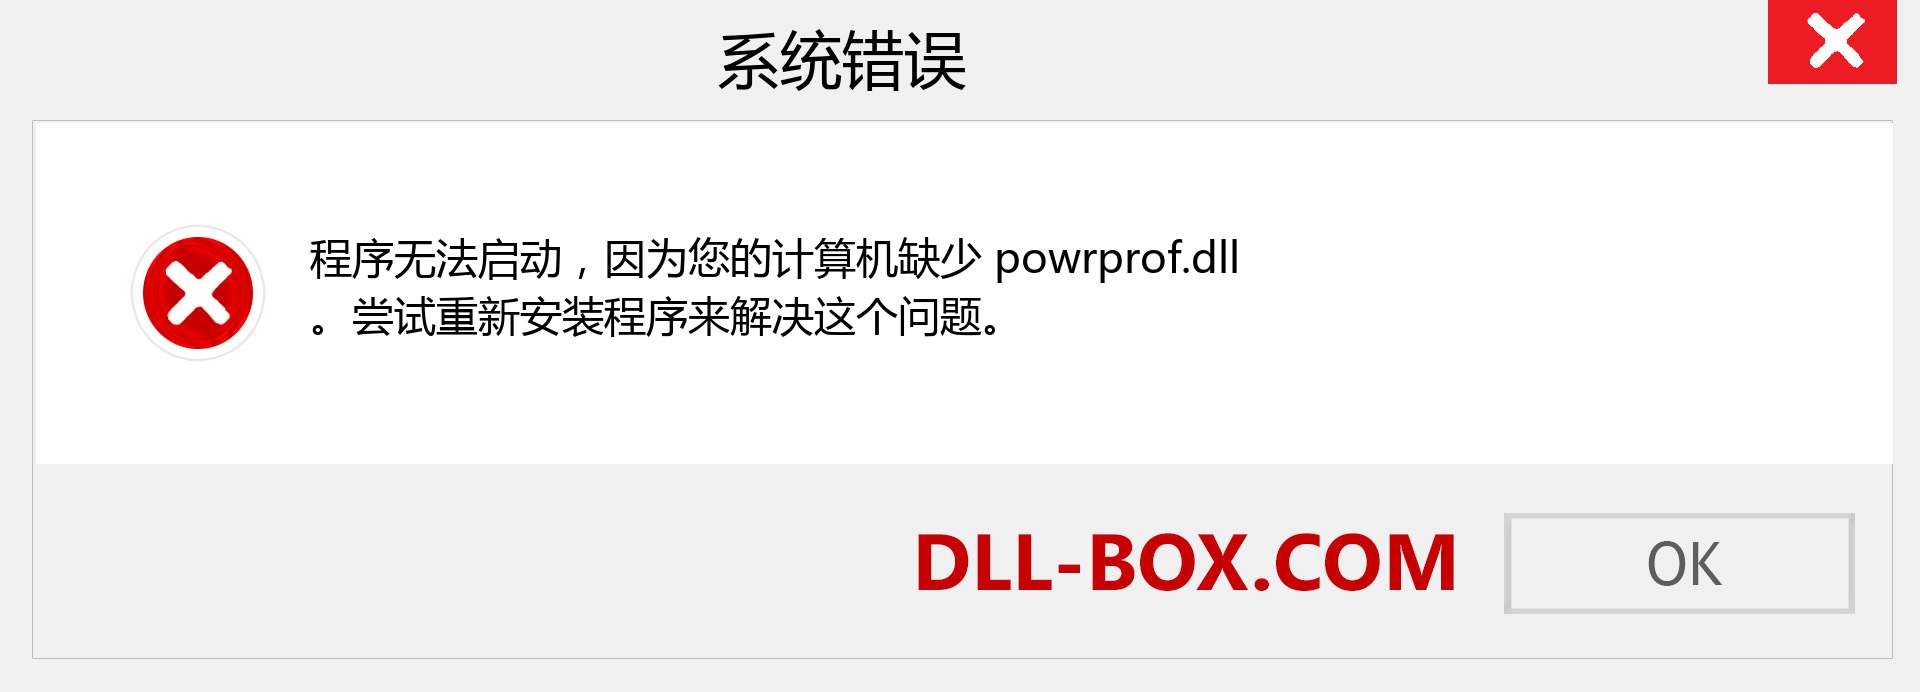 powrprof.dll 文件丢失？。 适用于 Windows 7、8、10 的下载 - 修复 Windows、照片、图像上的 powrprof dll 丢失错误